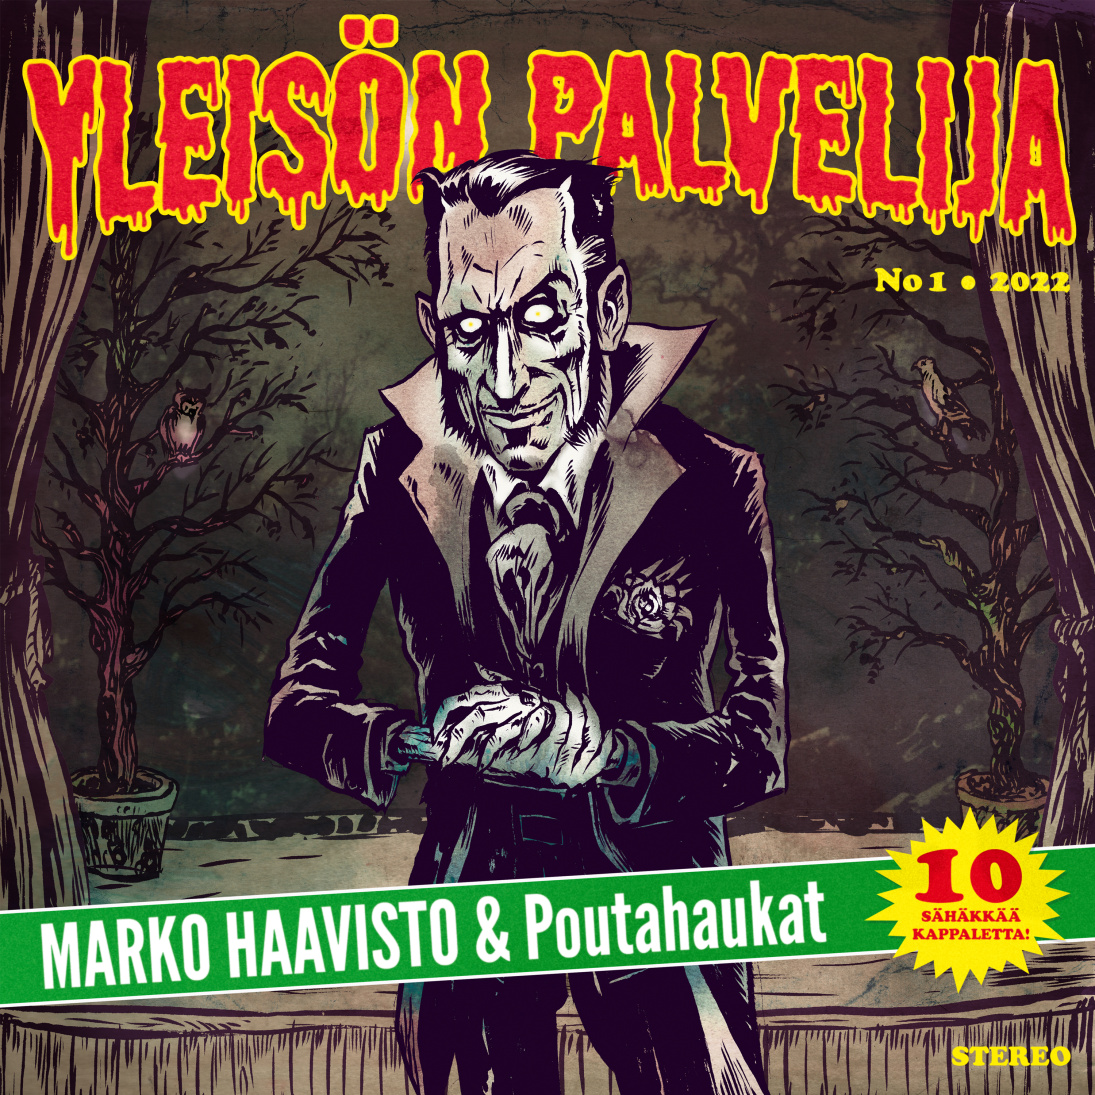 Marko Haavisto & Poutahaukat - Yleisön palvelija - LP (uusi)